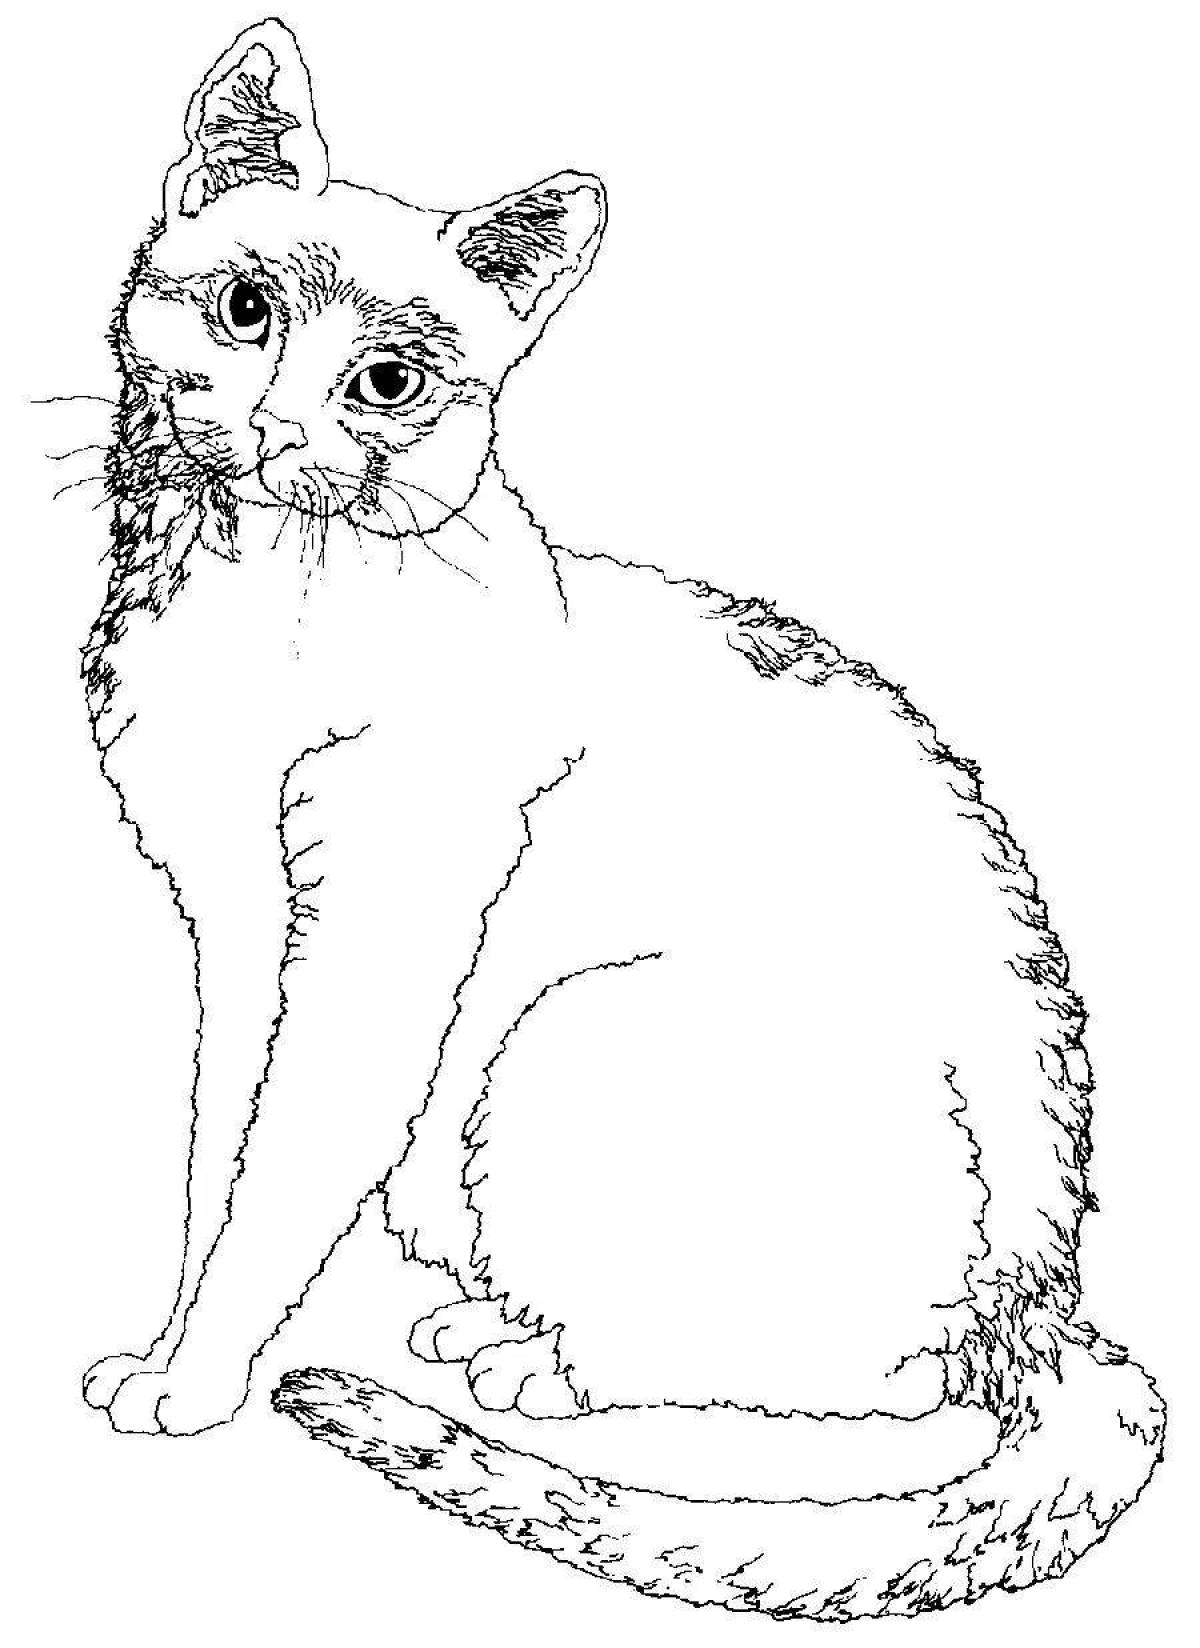 Ожесточенная раскраска кошка реалистичная